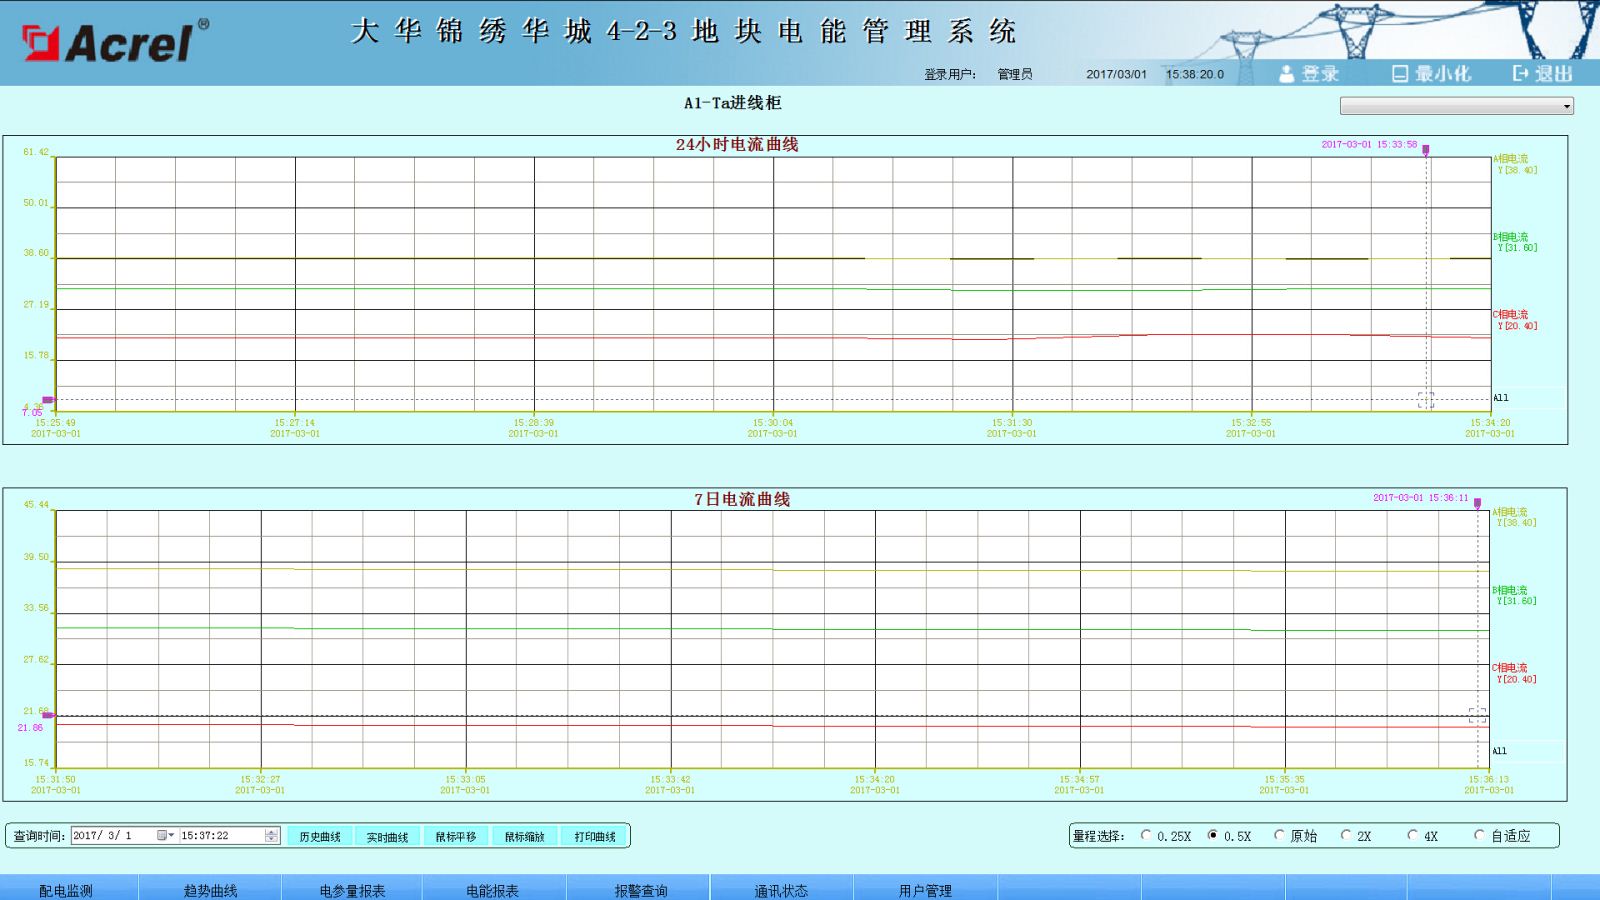 ACREL-2000电力监控系统在大华锦绣华城4-2-3地块的应用